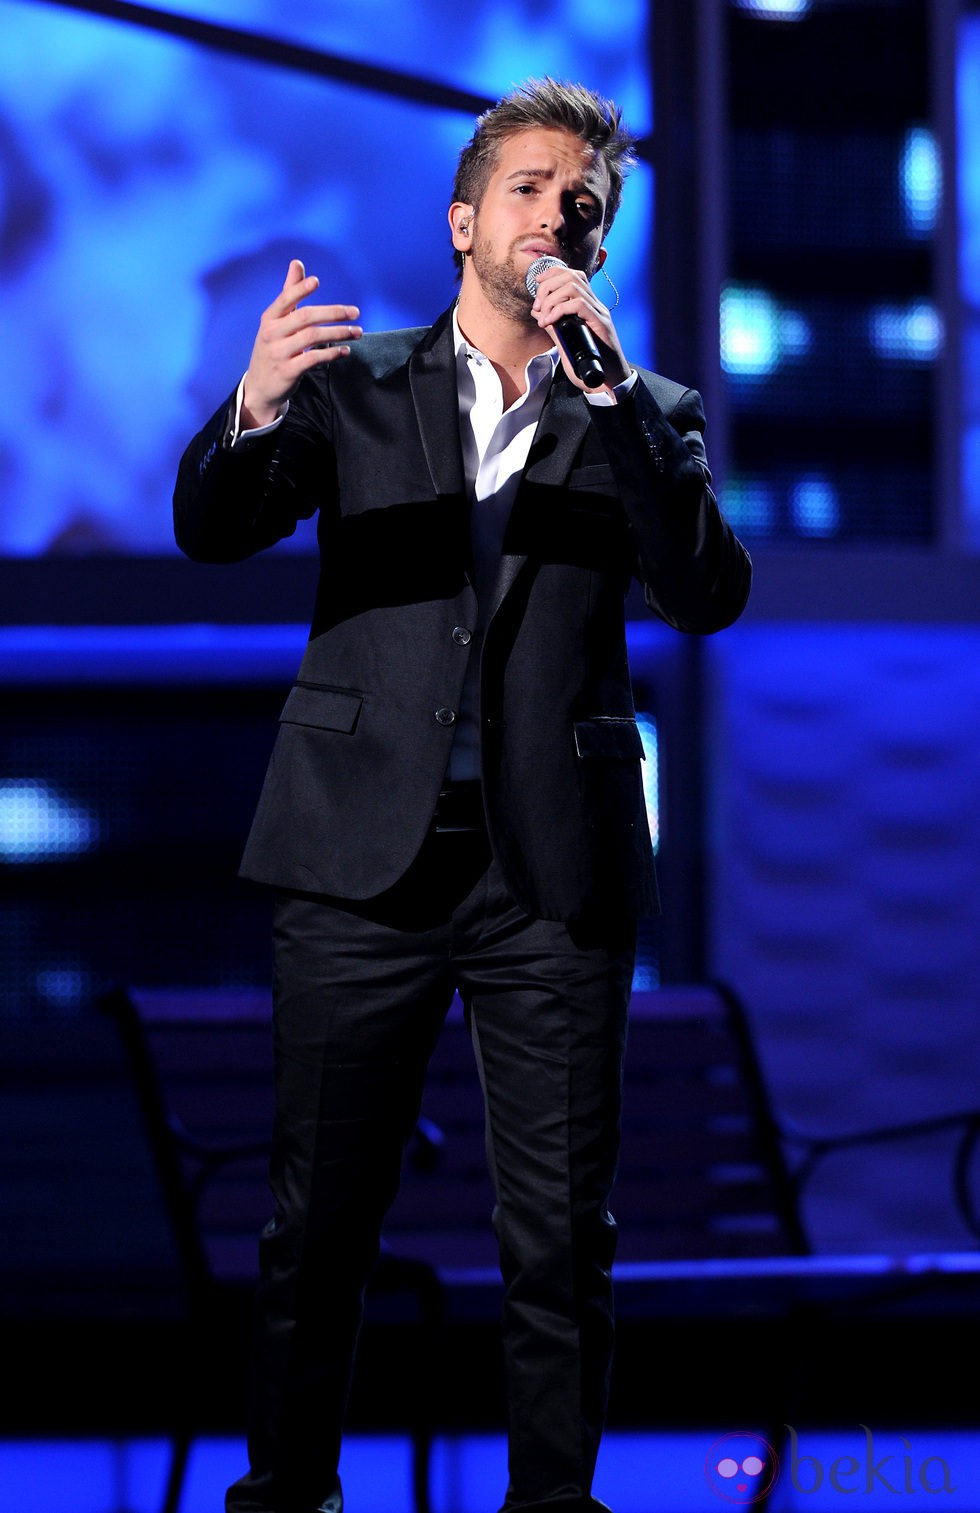 Pablo Alborán actuando en los Grammy Latinos 2012